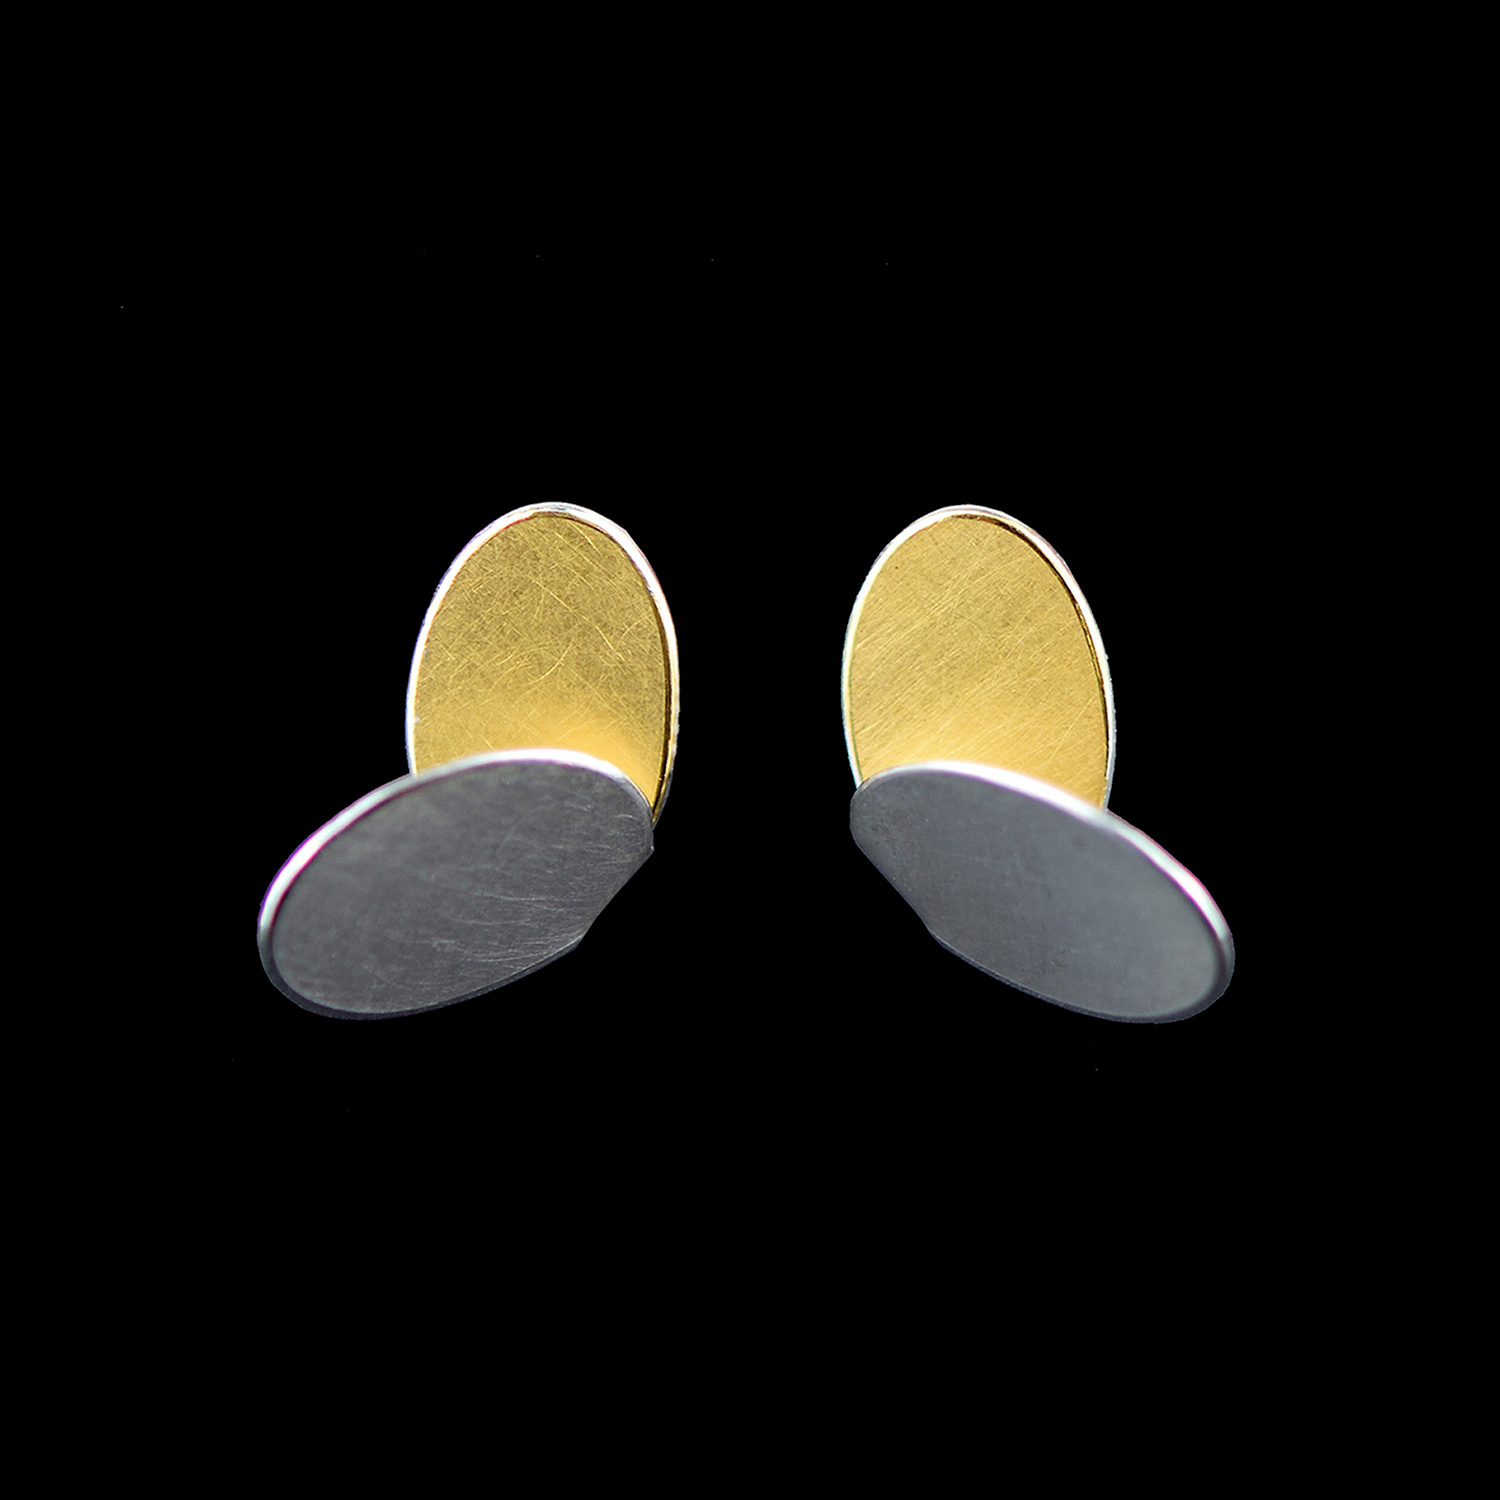 Oval Wing Earrings by Misun Won